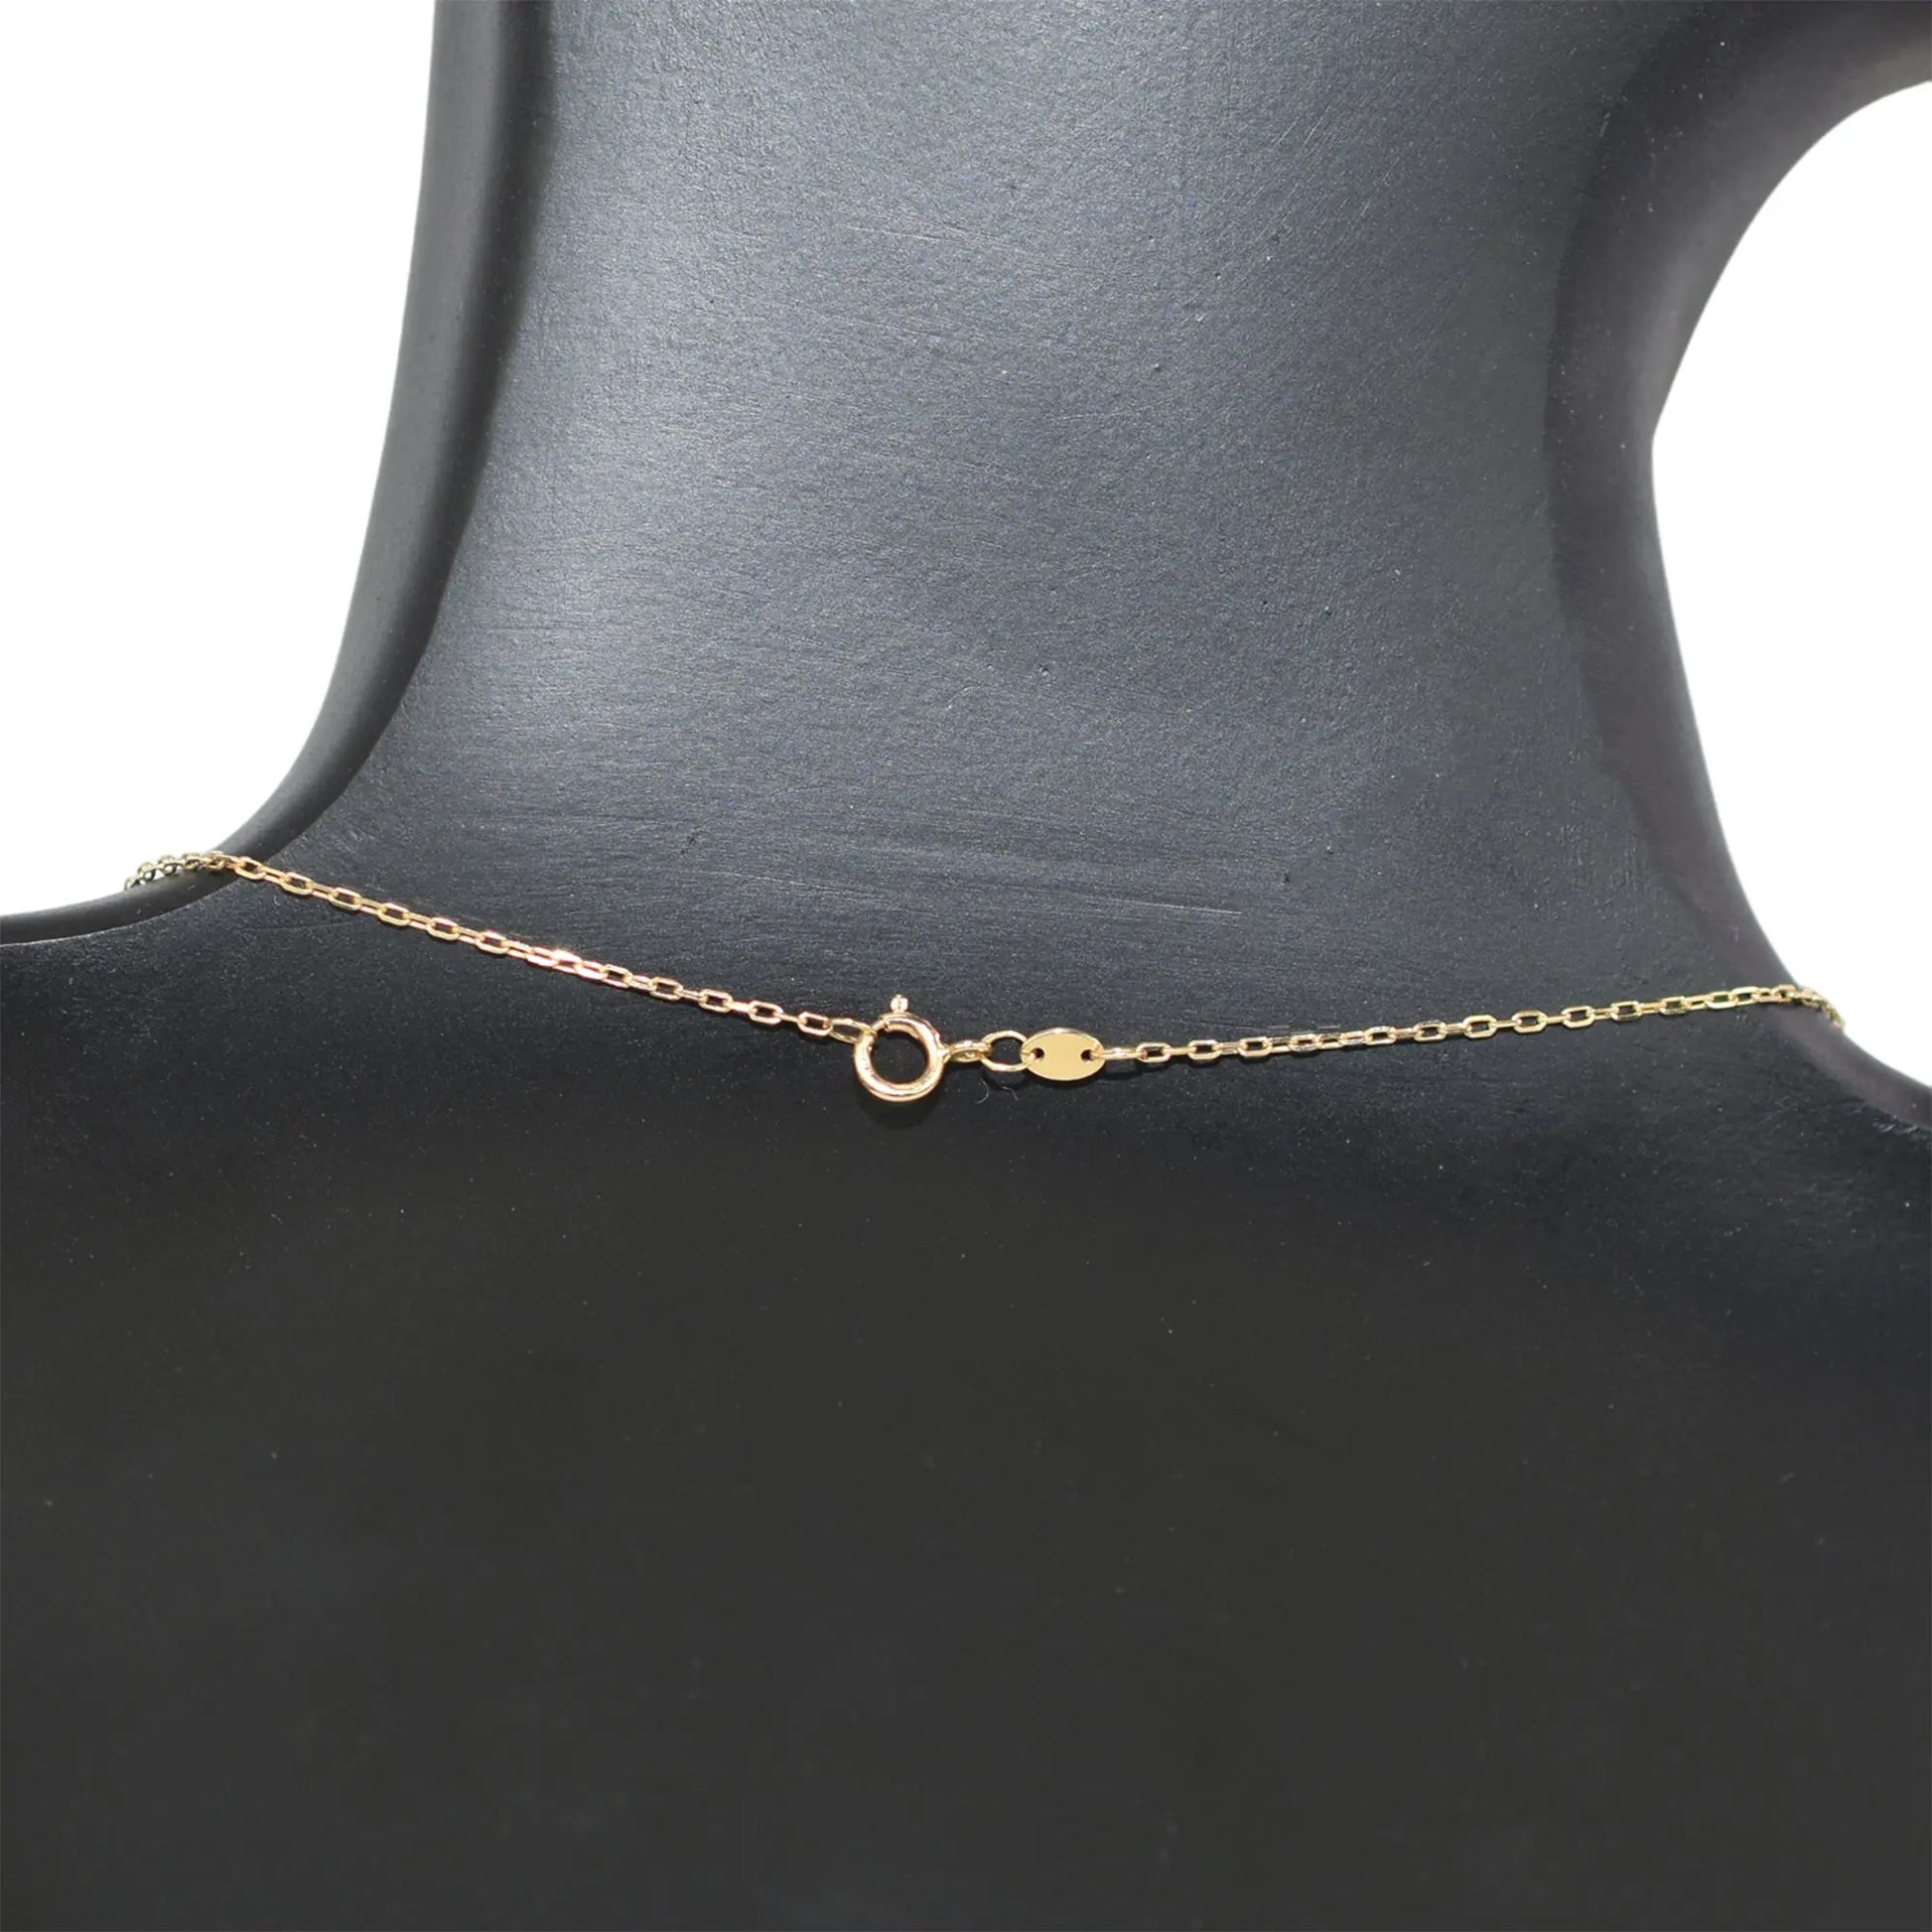 Tasia Garnet Necklace Jewelmak Shop